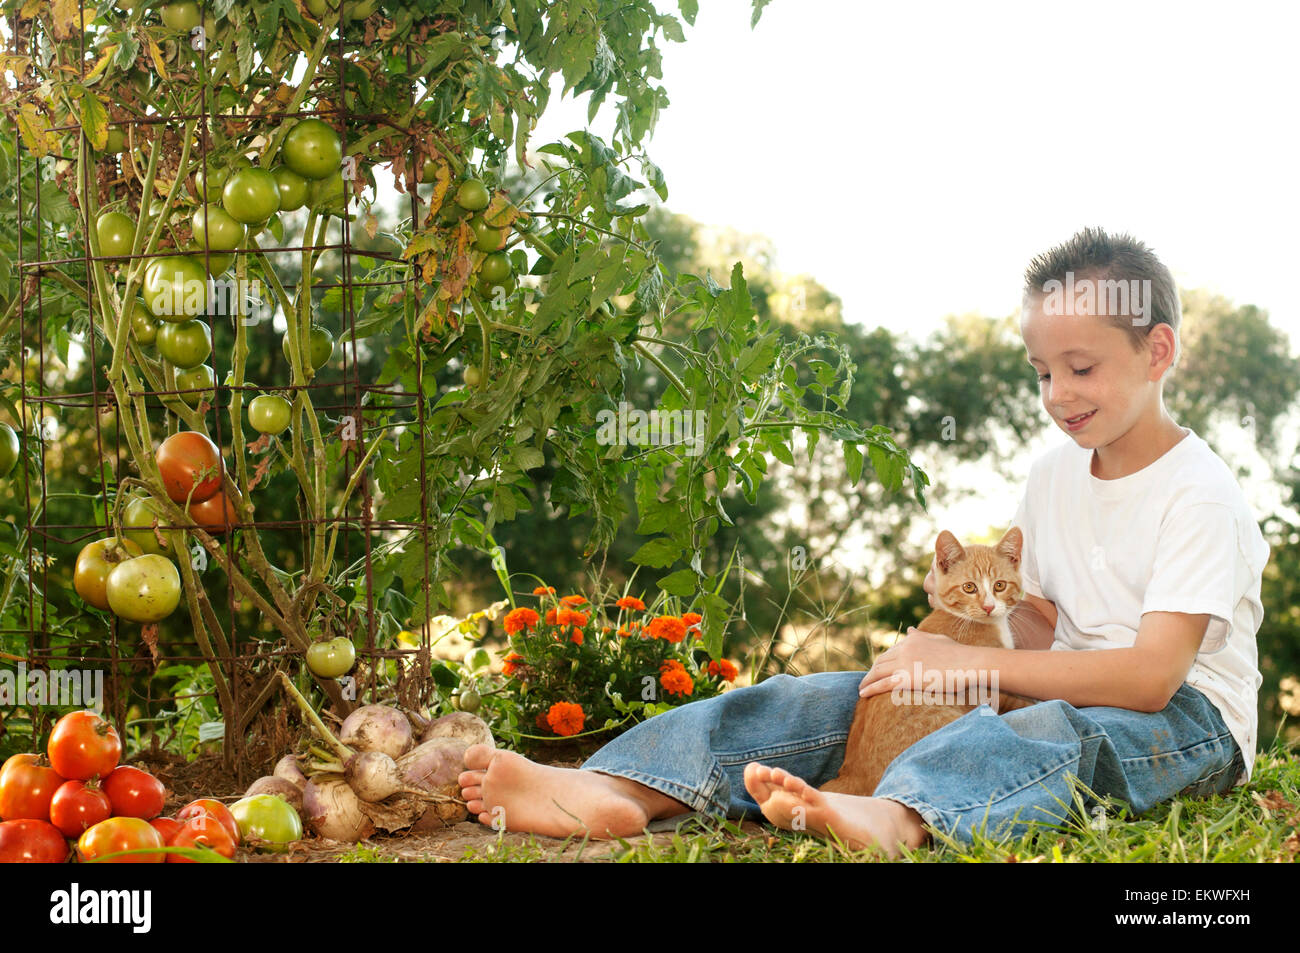 Garçon dans homegrown tomato garden holding cat Banque D'Images